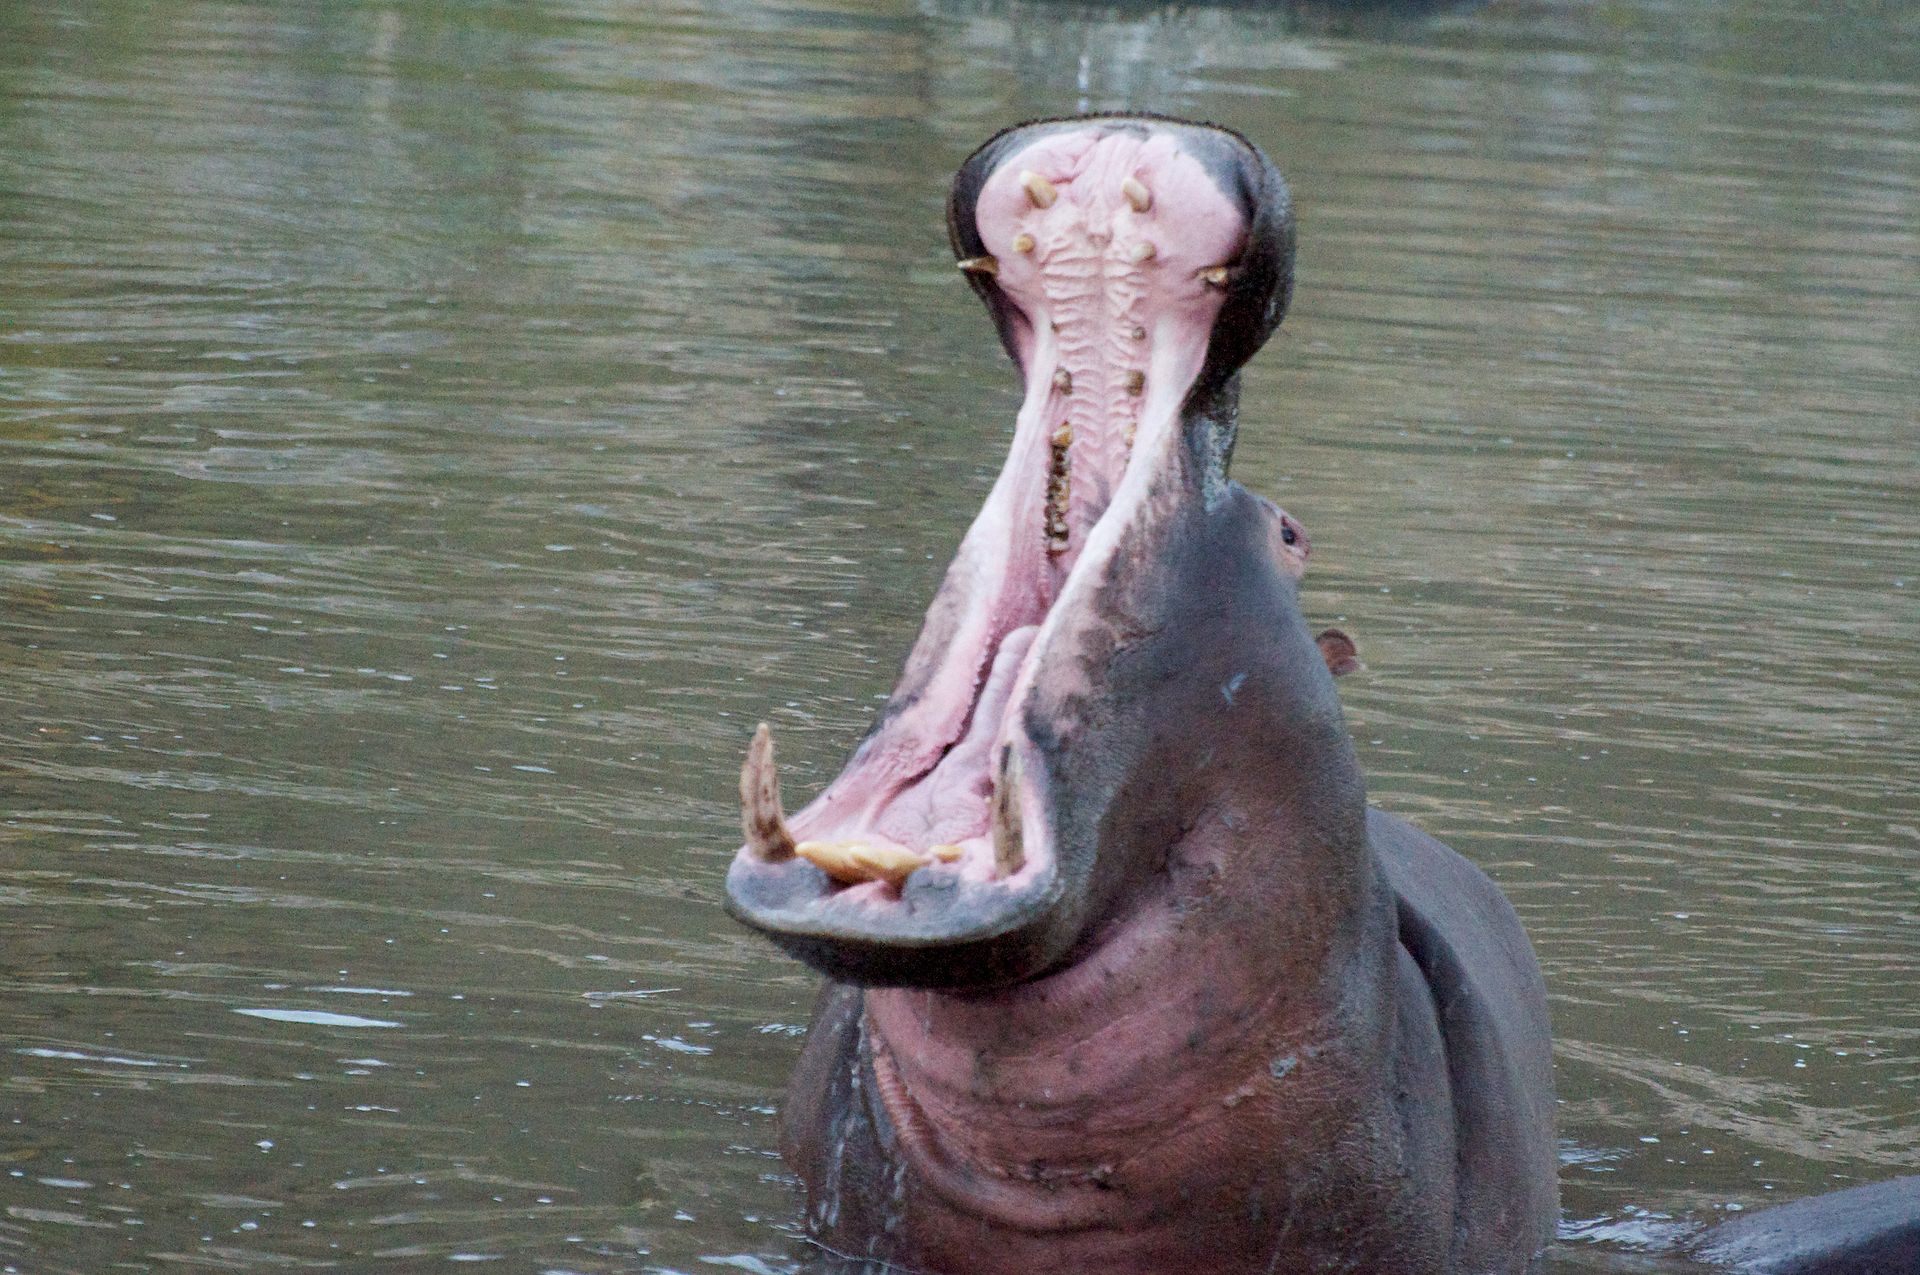 Hippo #19